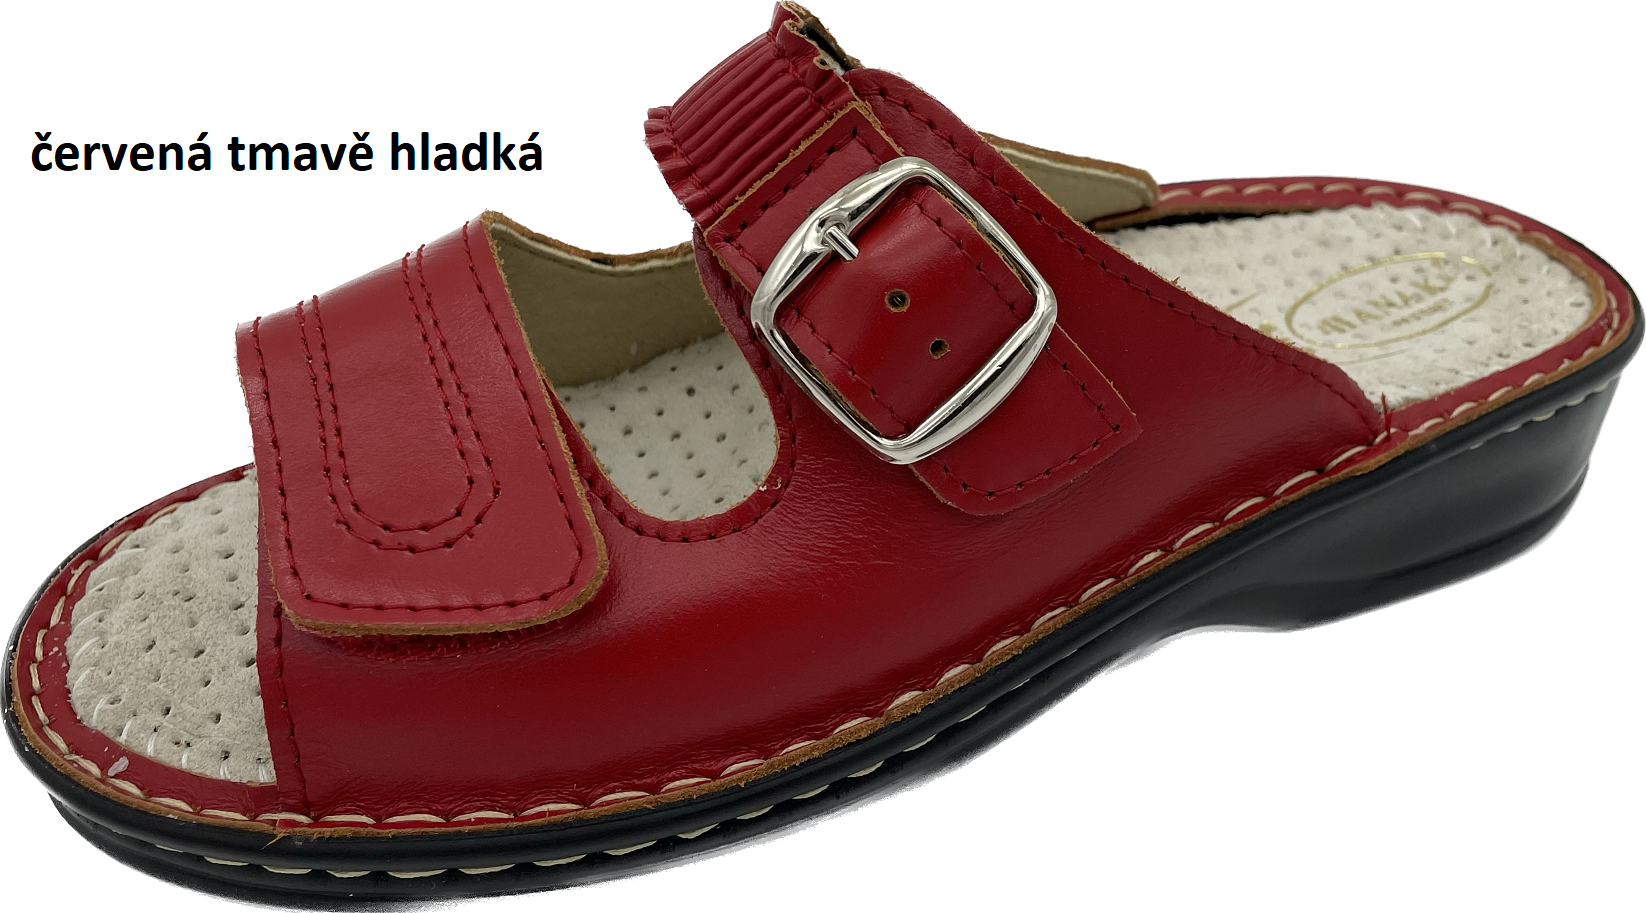 Boty Hanák vzor 305 - černá podešev Barva usně: červená hladká, Velikosti obuvi: 35